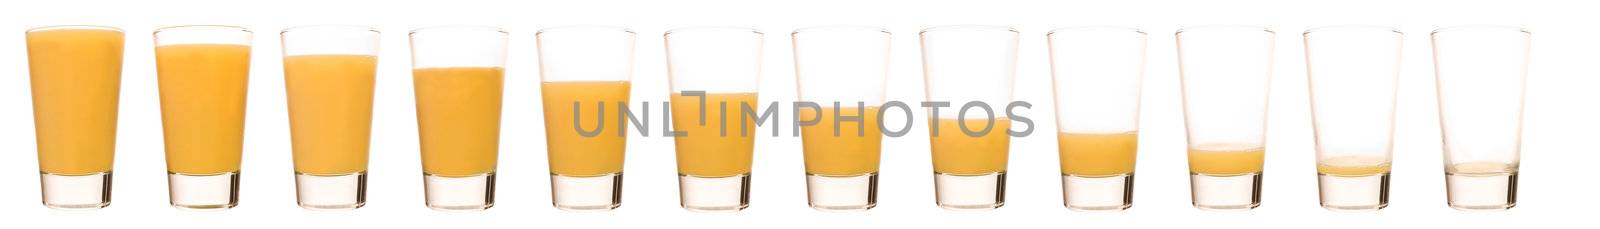 Orange Juice - Time Lapse by gemenacom